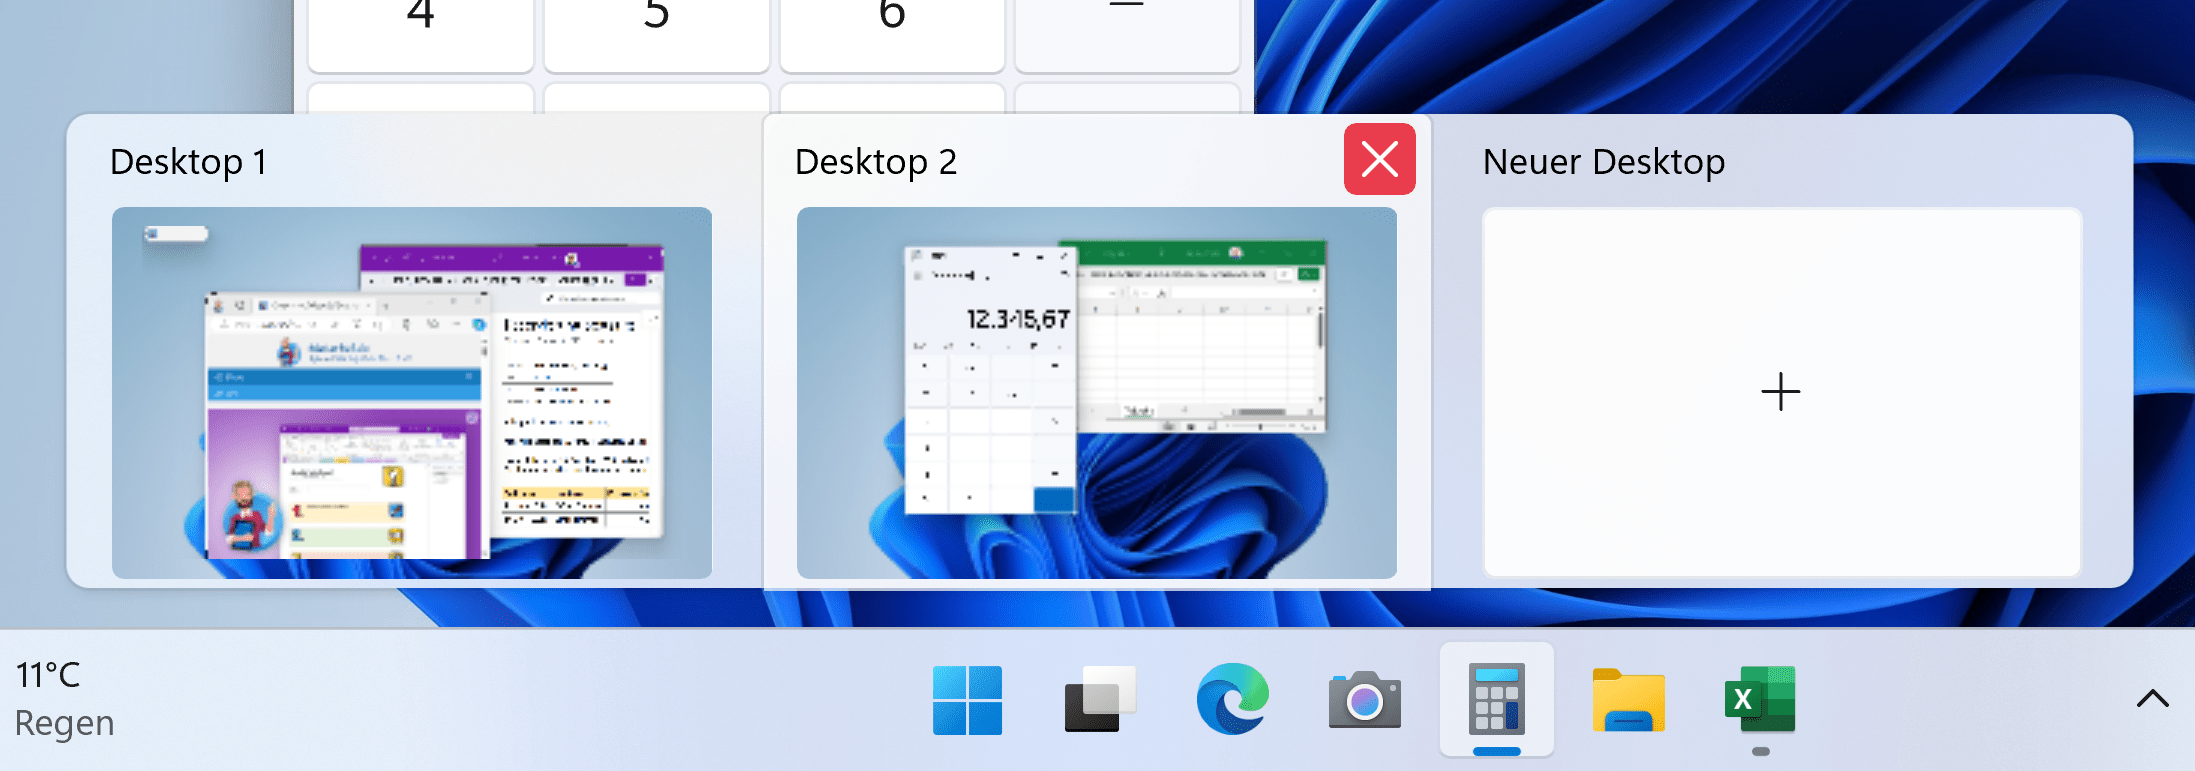 Neuer Desktop in Windows 11